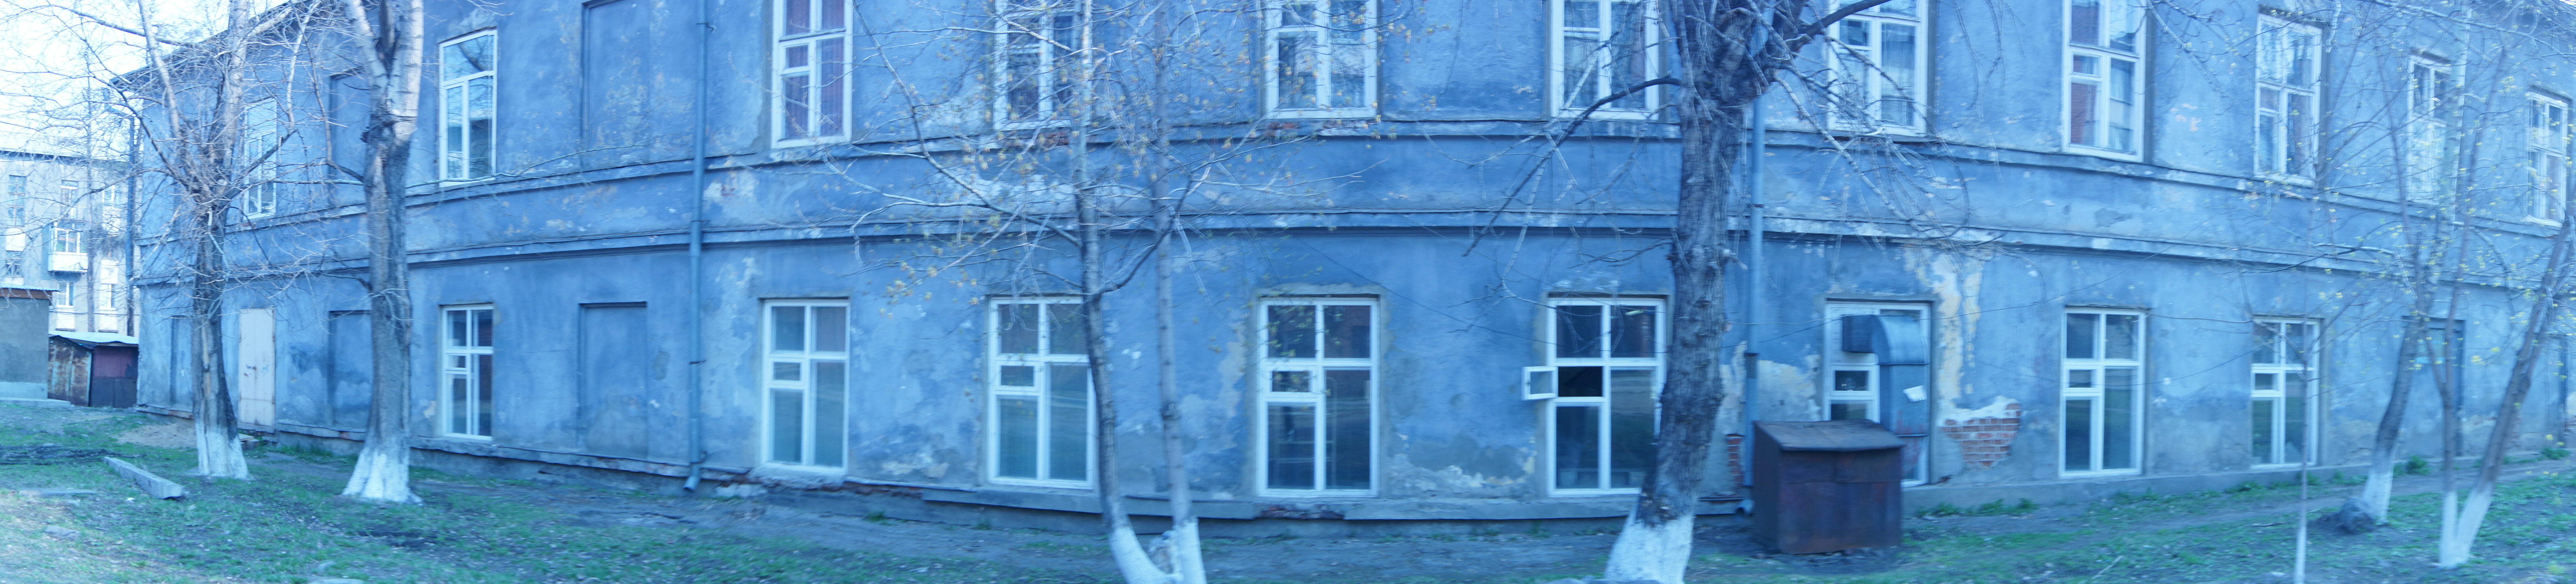 Иркутский институт развития